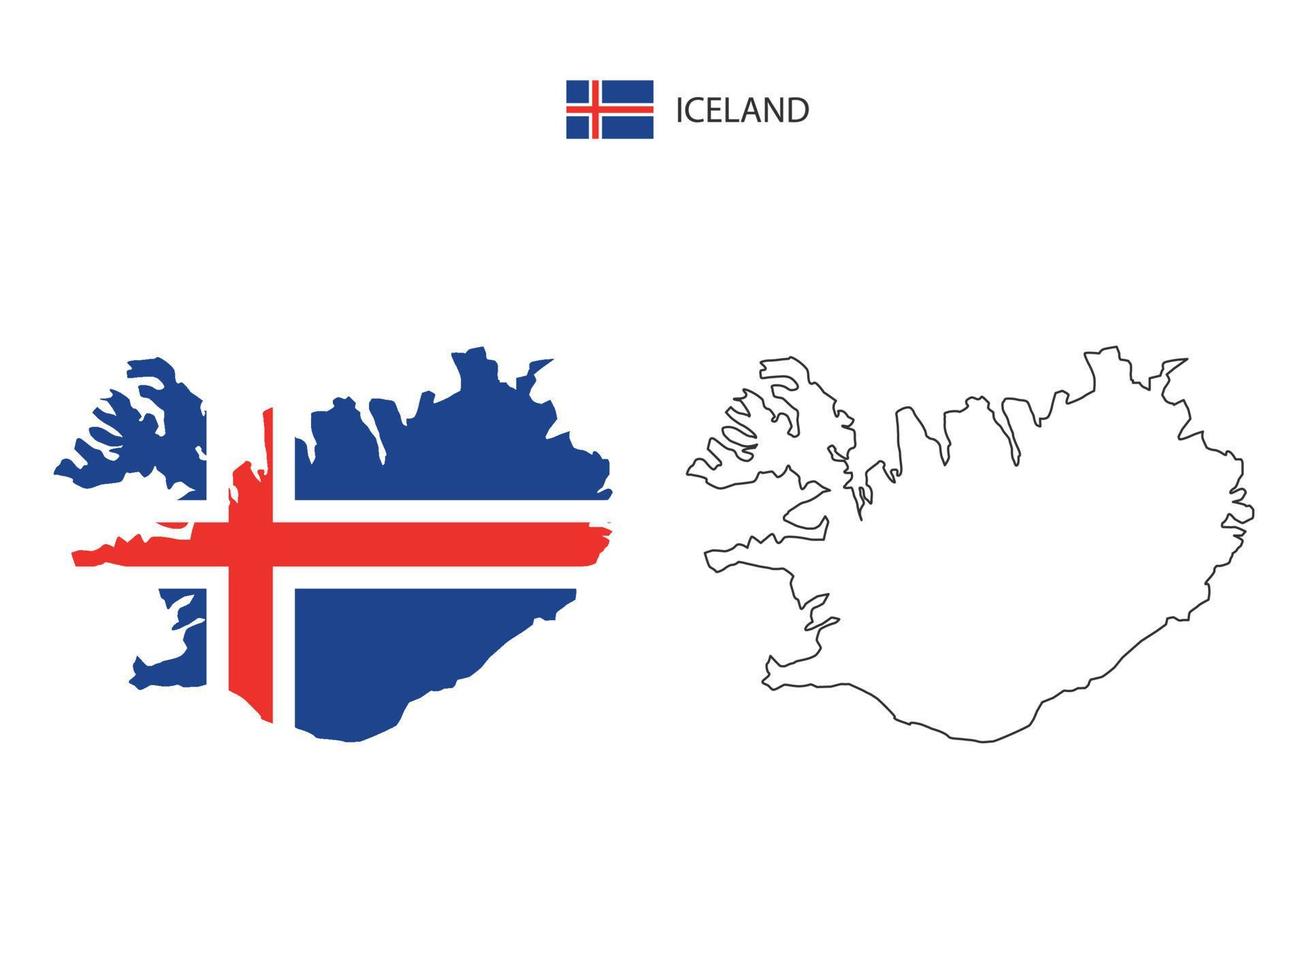 Island-Karte Stadtvektor geteilt durch Umriss-Einfachheitsstil. haben 2 Versionen, eine schwarze Version mit dünner Linie und eine Version in der Farbe der Landesflagge. beide Karten waren auf dem weißen Hintergrund. vektor